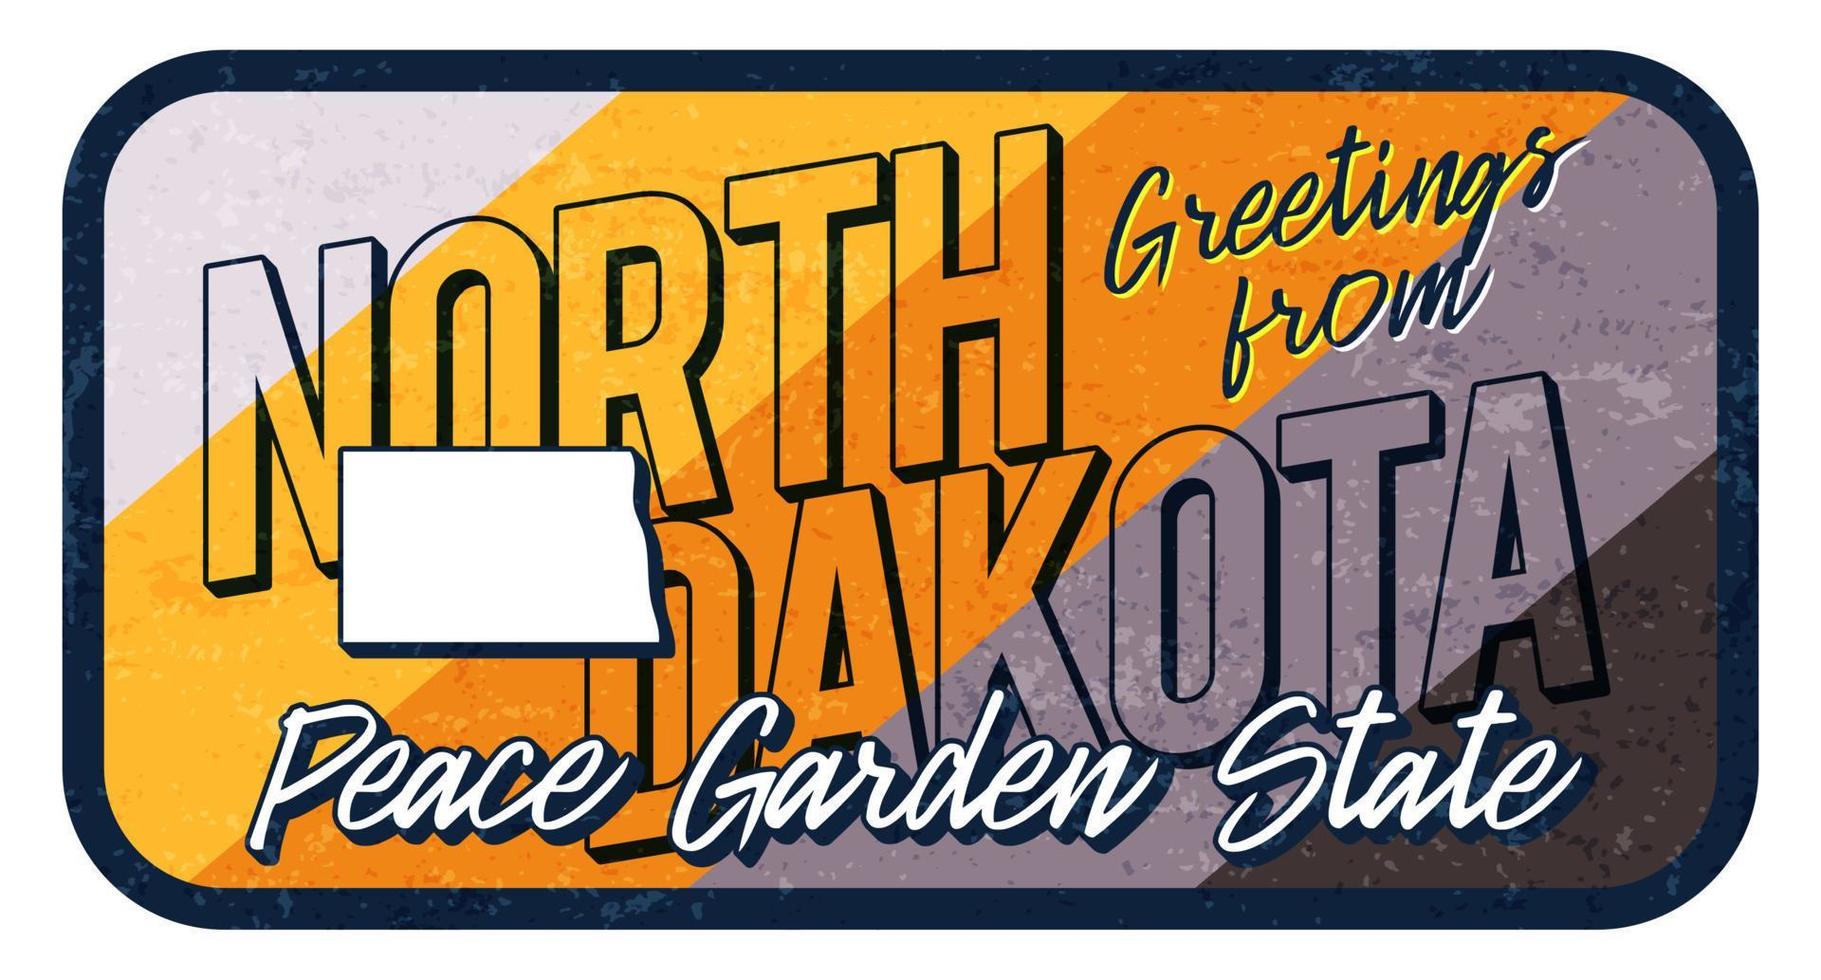 groet uit Noord-Dakota vintage roestige metalen teken vectorillustratie. vector staatskaart in grunge stijl met typografie hand getekende letters.